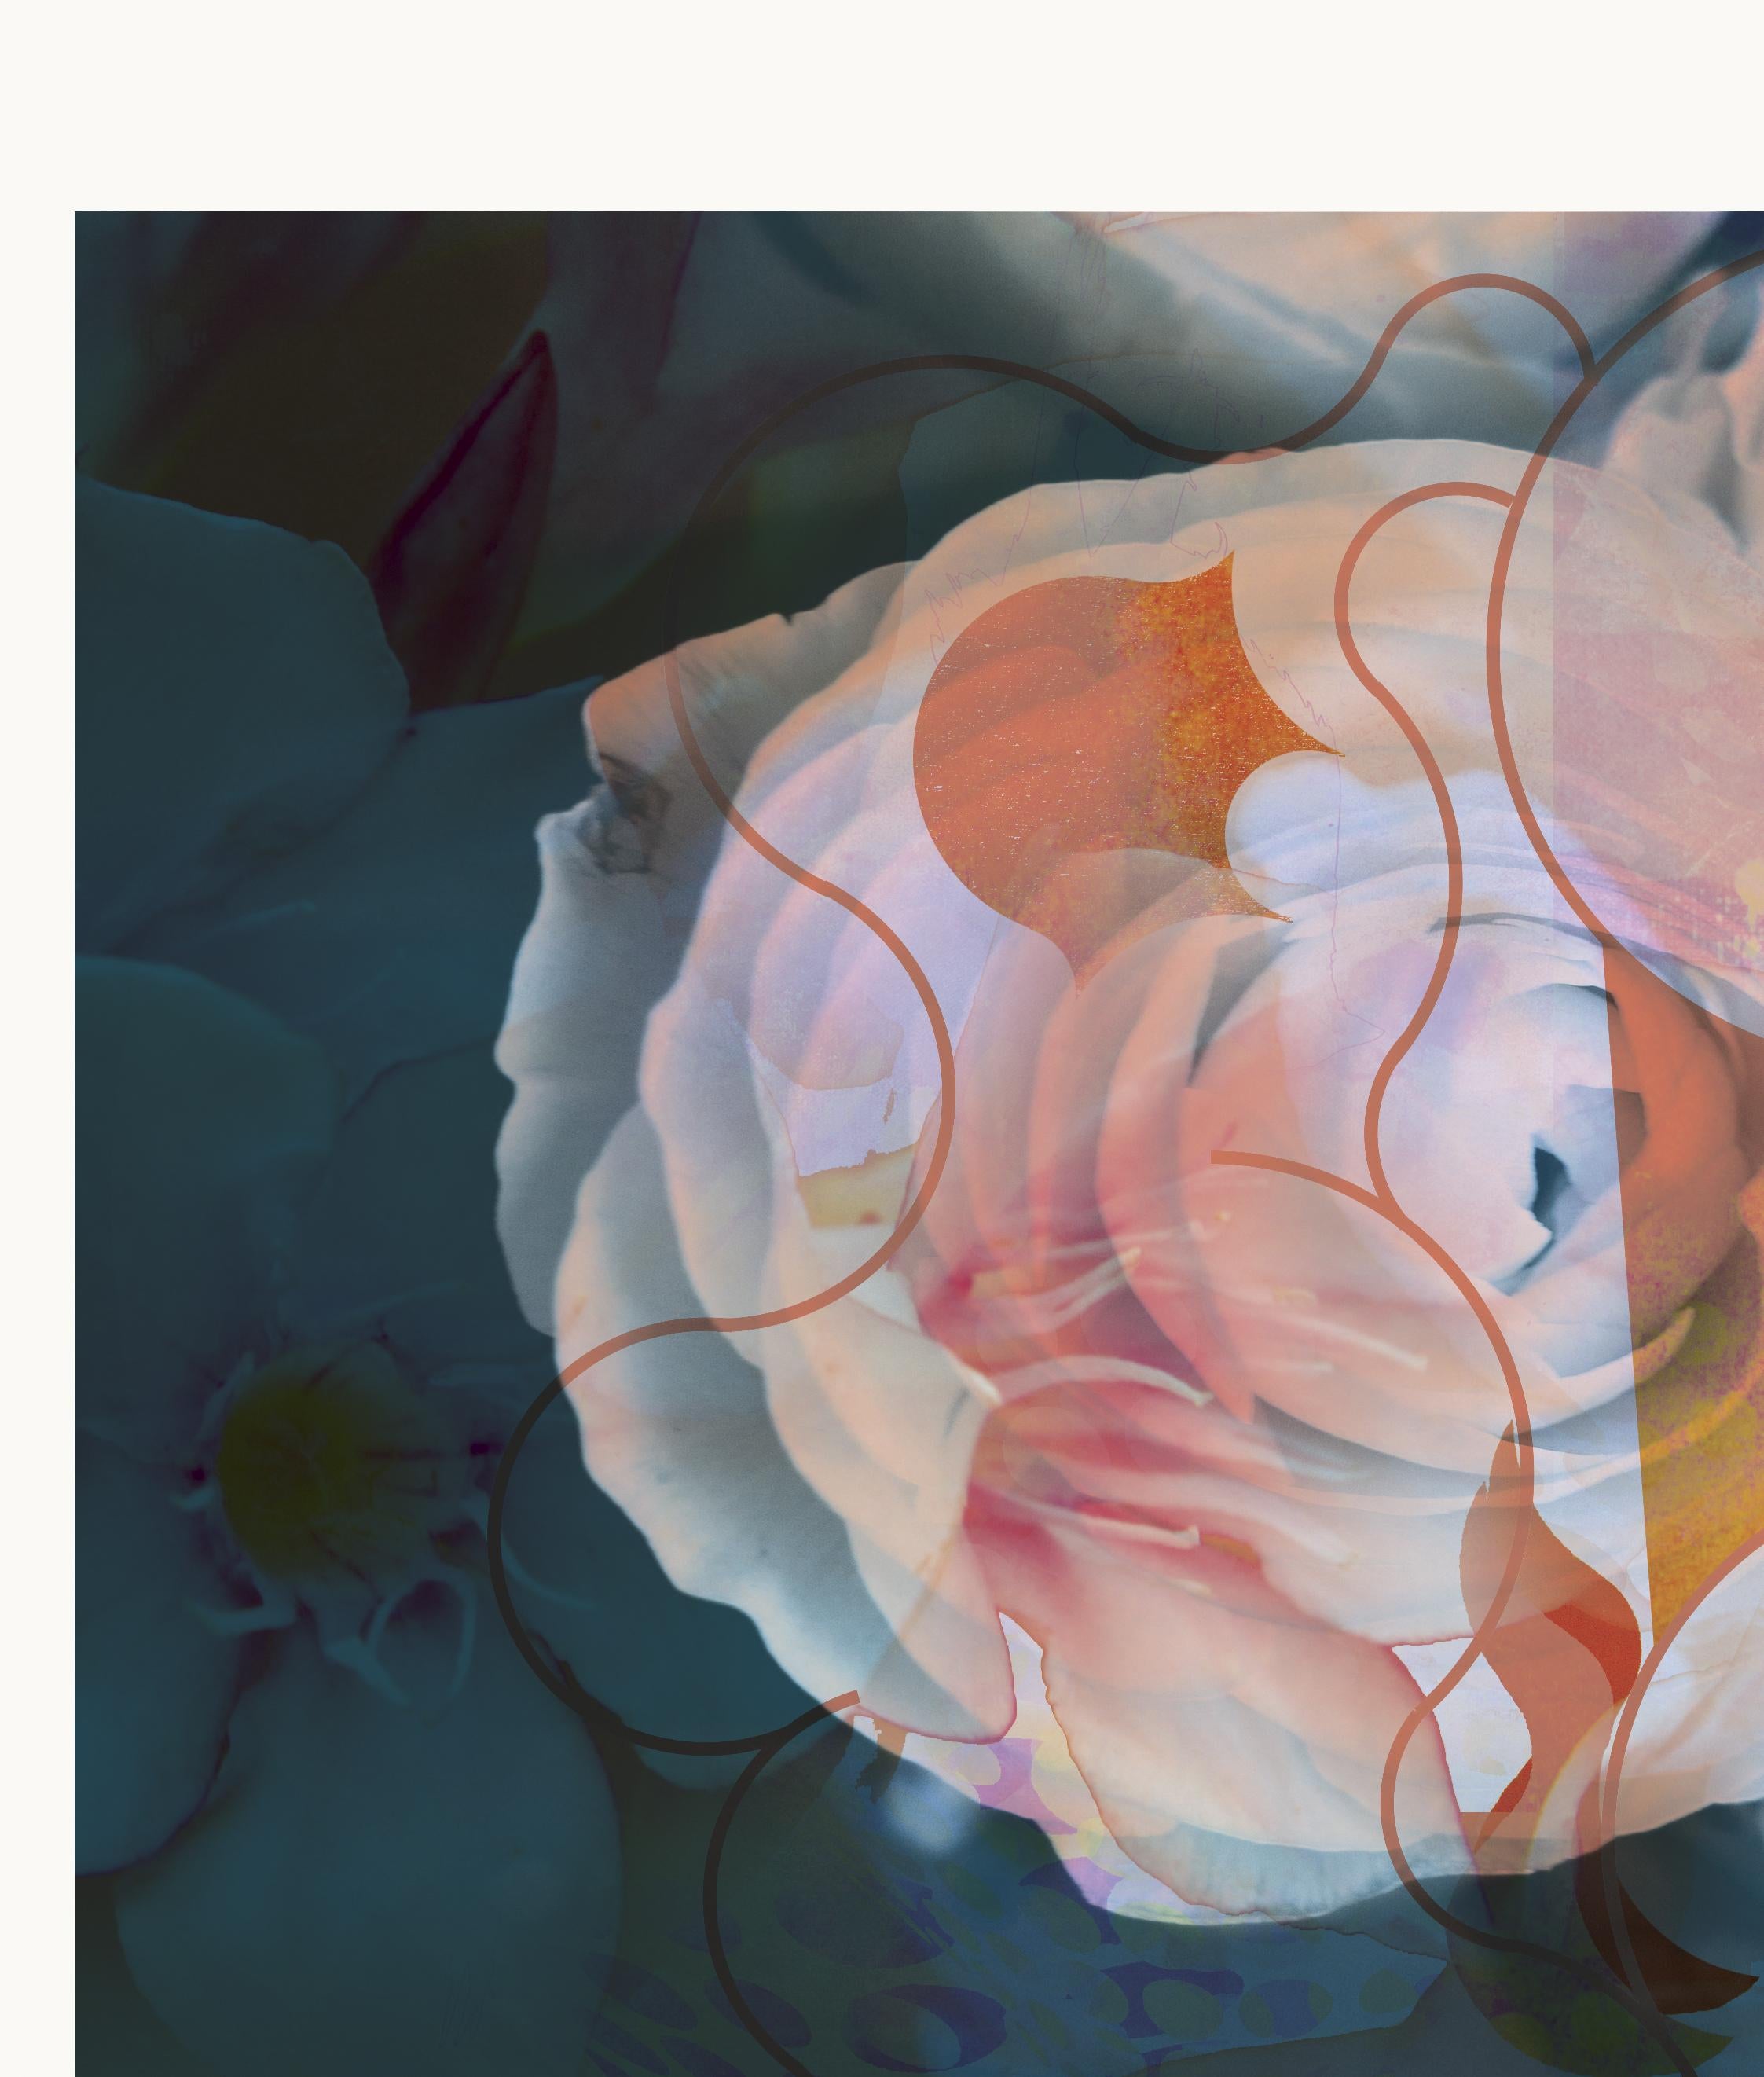 Blumen X 2019
Auflage von 25 Stück

Digitaler Pigmentdruck mit Ultrachrome-Tinte auf Fabriano Rosaspina-Papier. Handsigniert vom Künstler, mit Echtheitszertifikat,  (Ungerahmt)

Seine Werke wurden im Reina Sofía Museum in Madrid, in der Royal